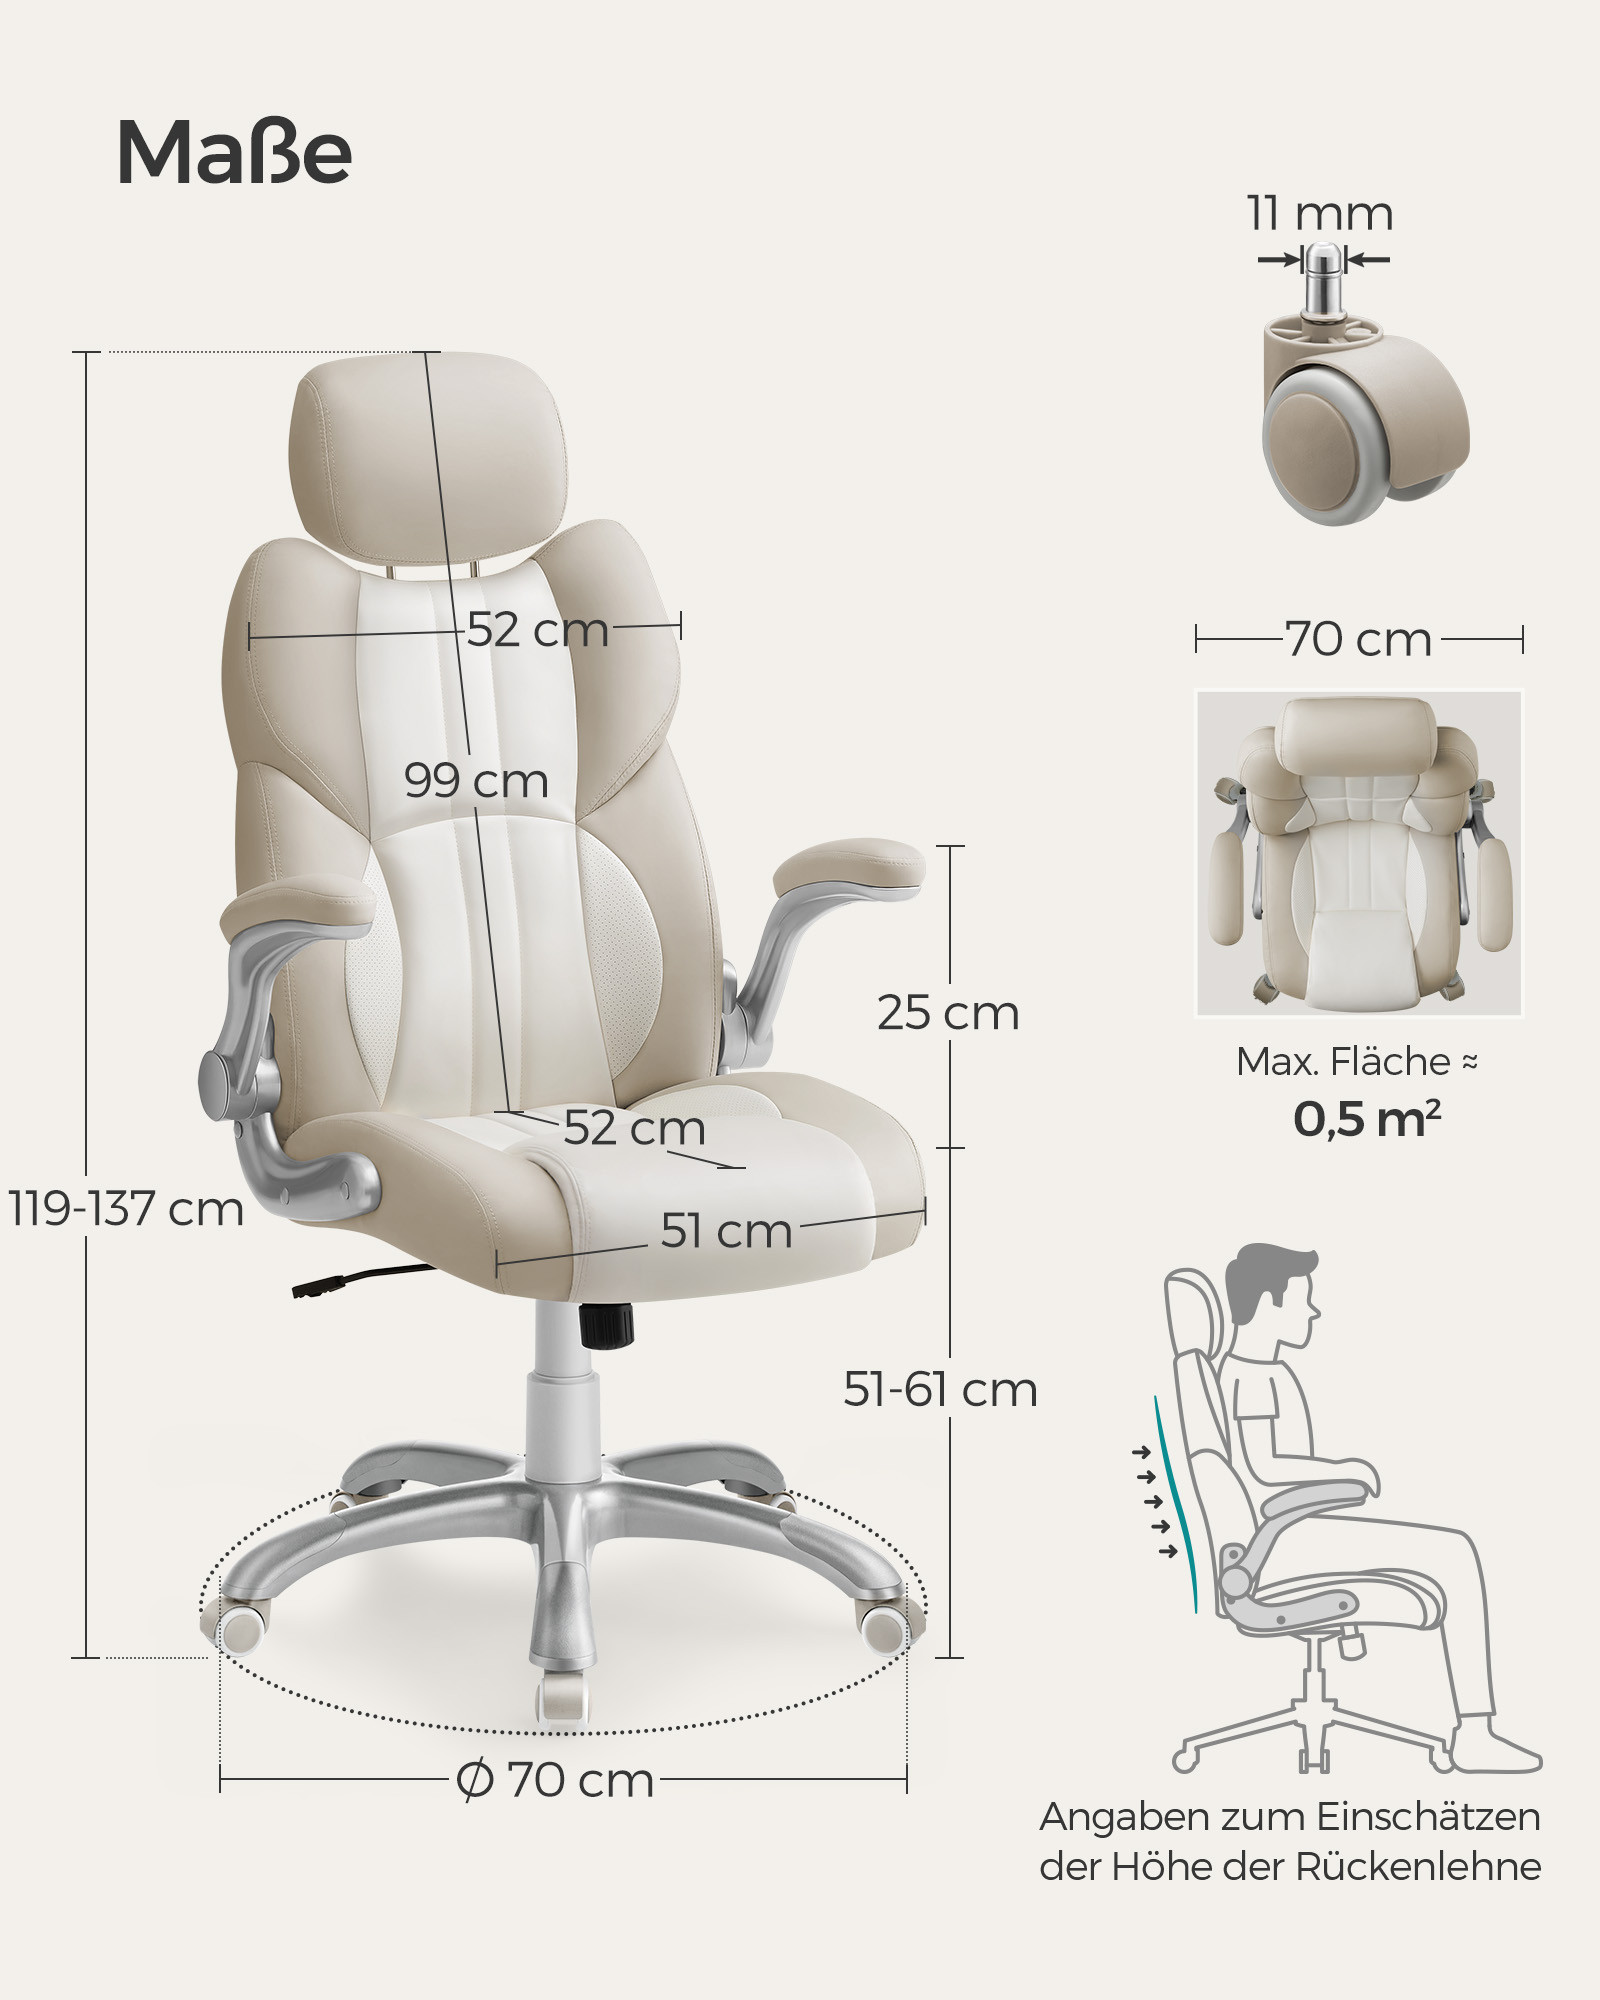 Kancelárska stolička OBG065W02